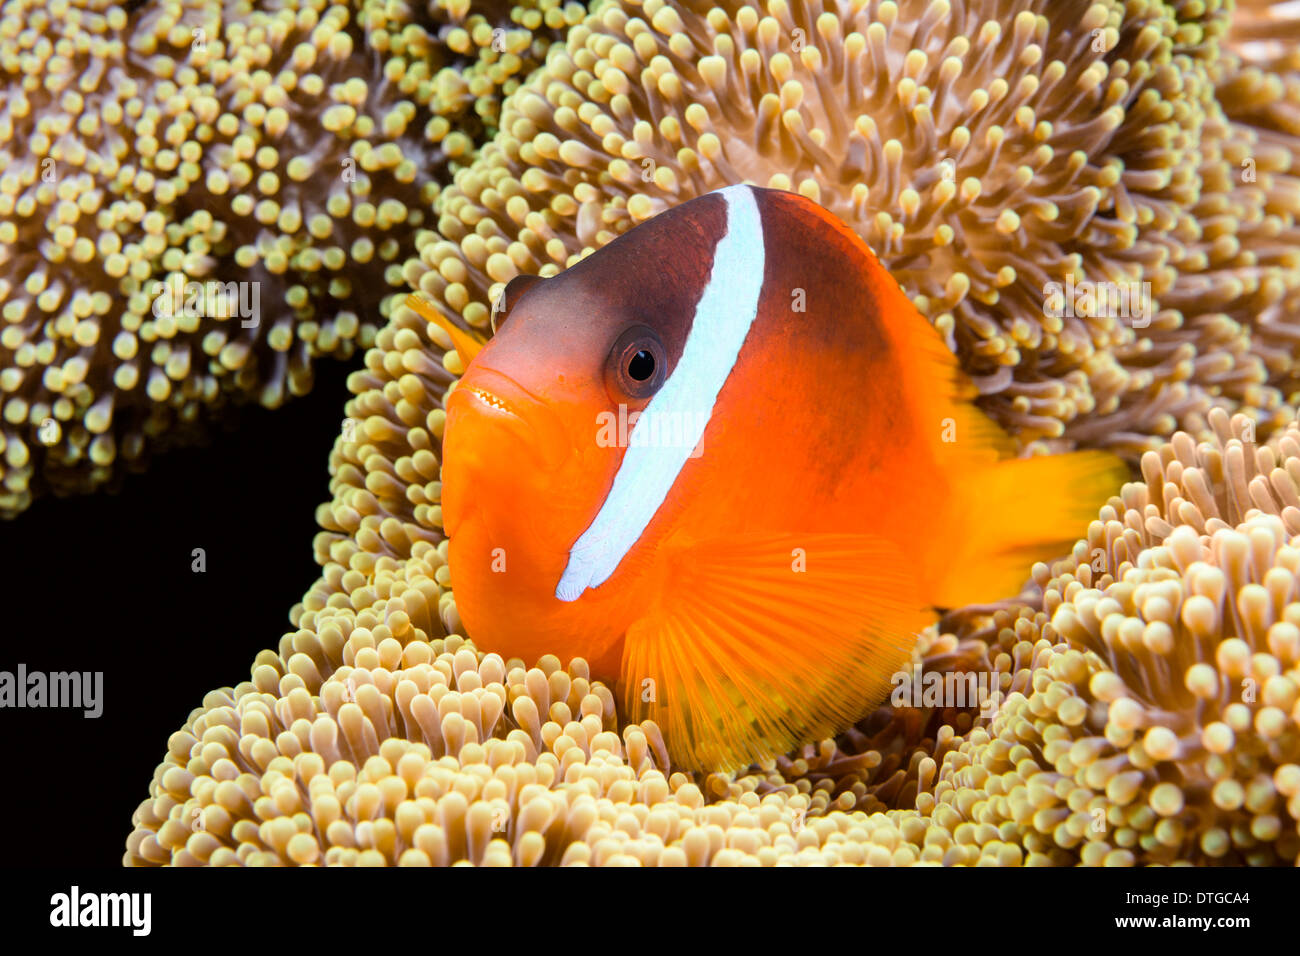 Un beau poissons clown orange de protection repose dans les tentacules d'une anémone de mer dans les régions tropicales de la mer des îles Fidji. Banque D'Images